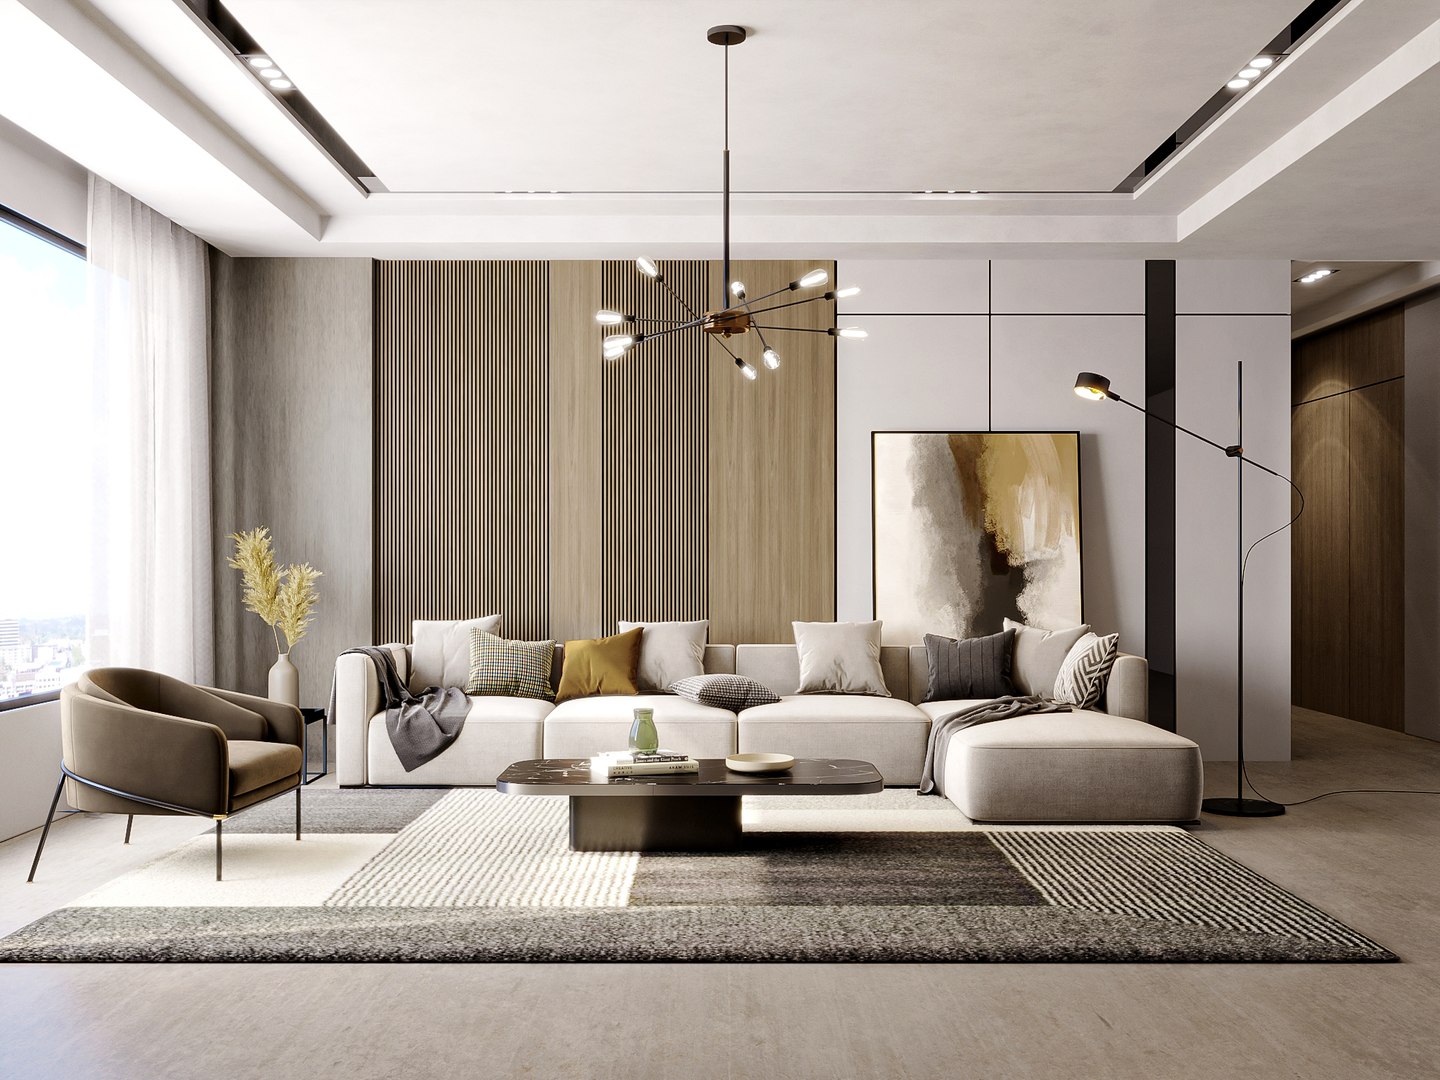 3D Model Interior Living Room Scene 17 - TurboSquid 2137494